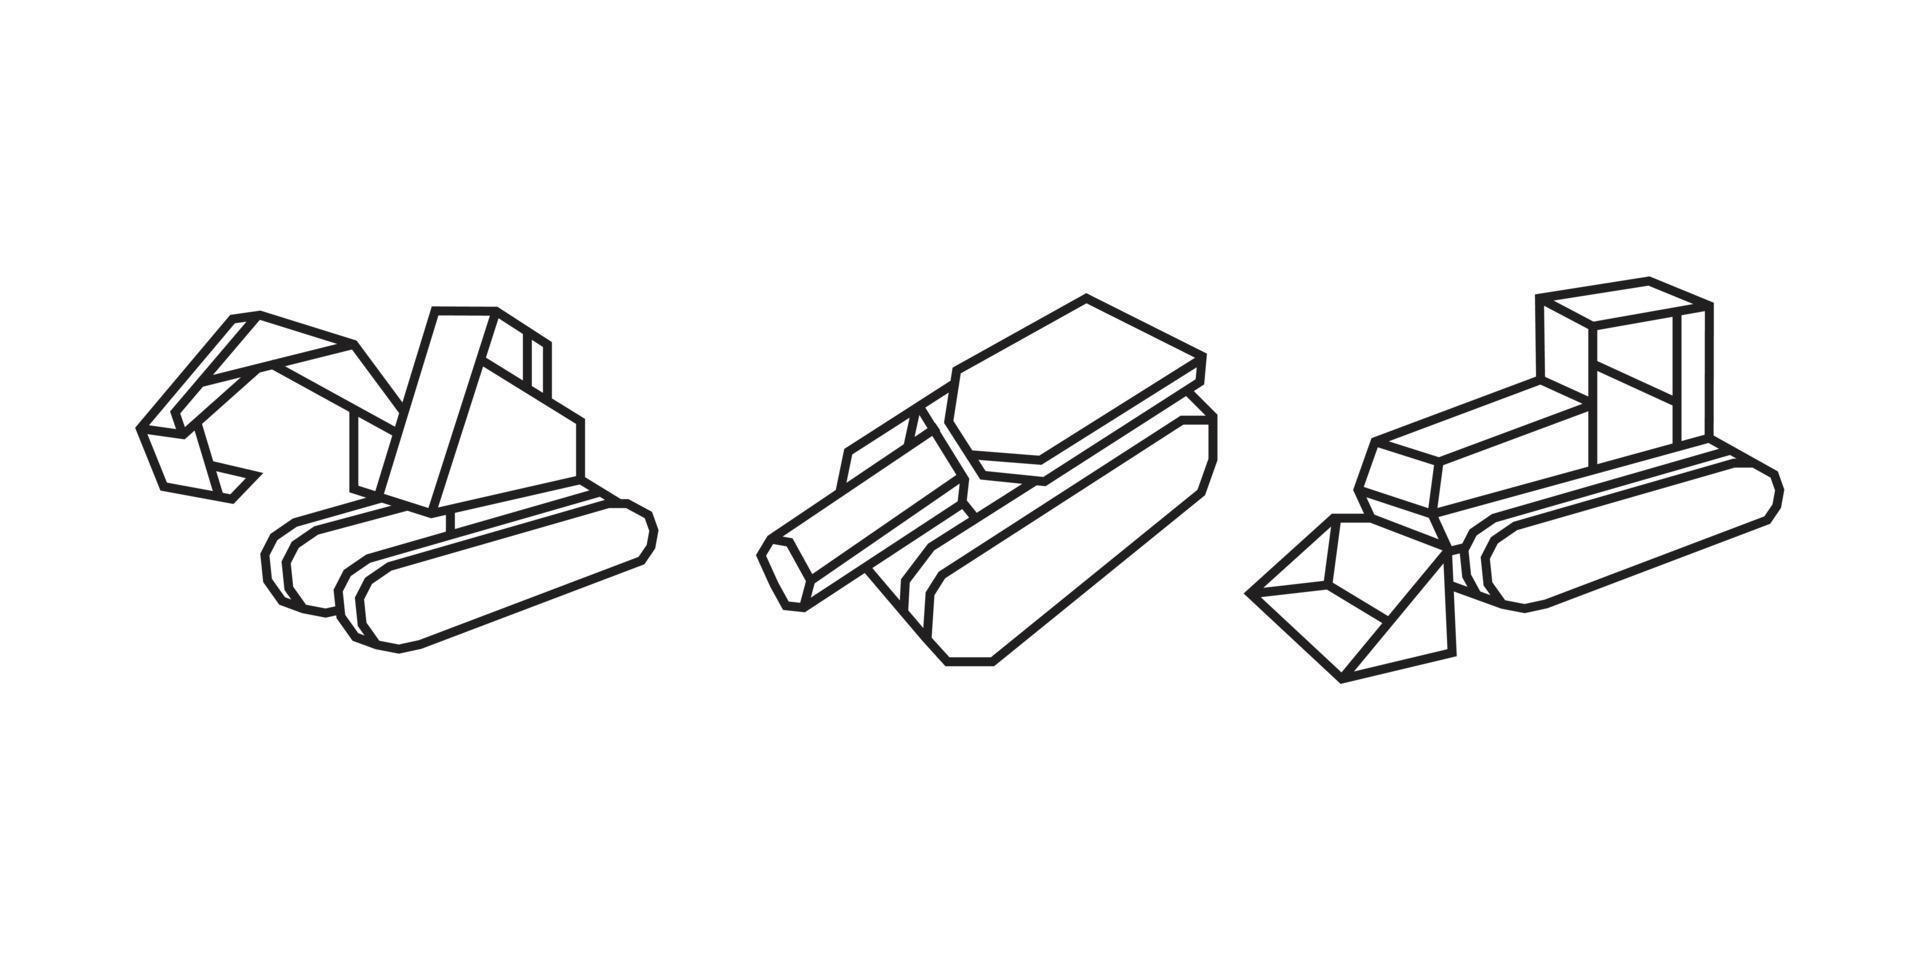 illustrazioni di attrezzature pesanti in stile origami vettore